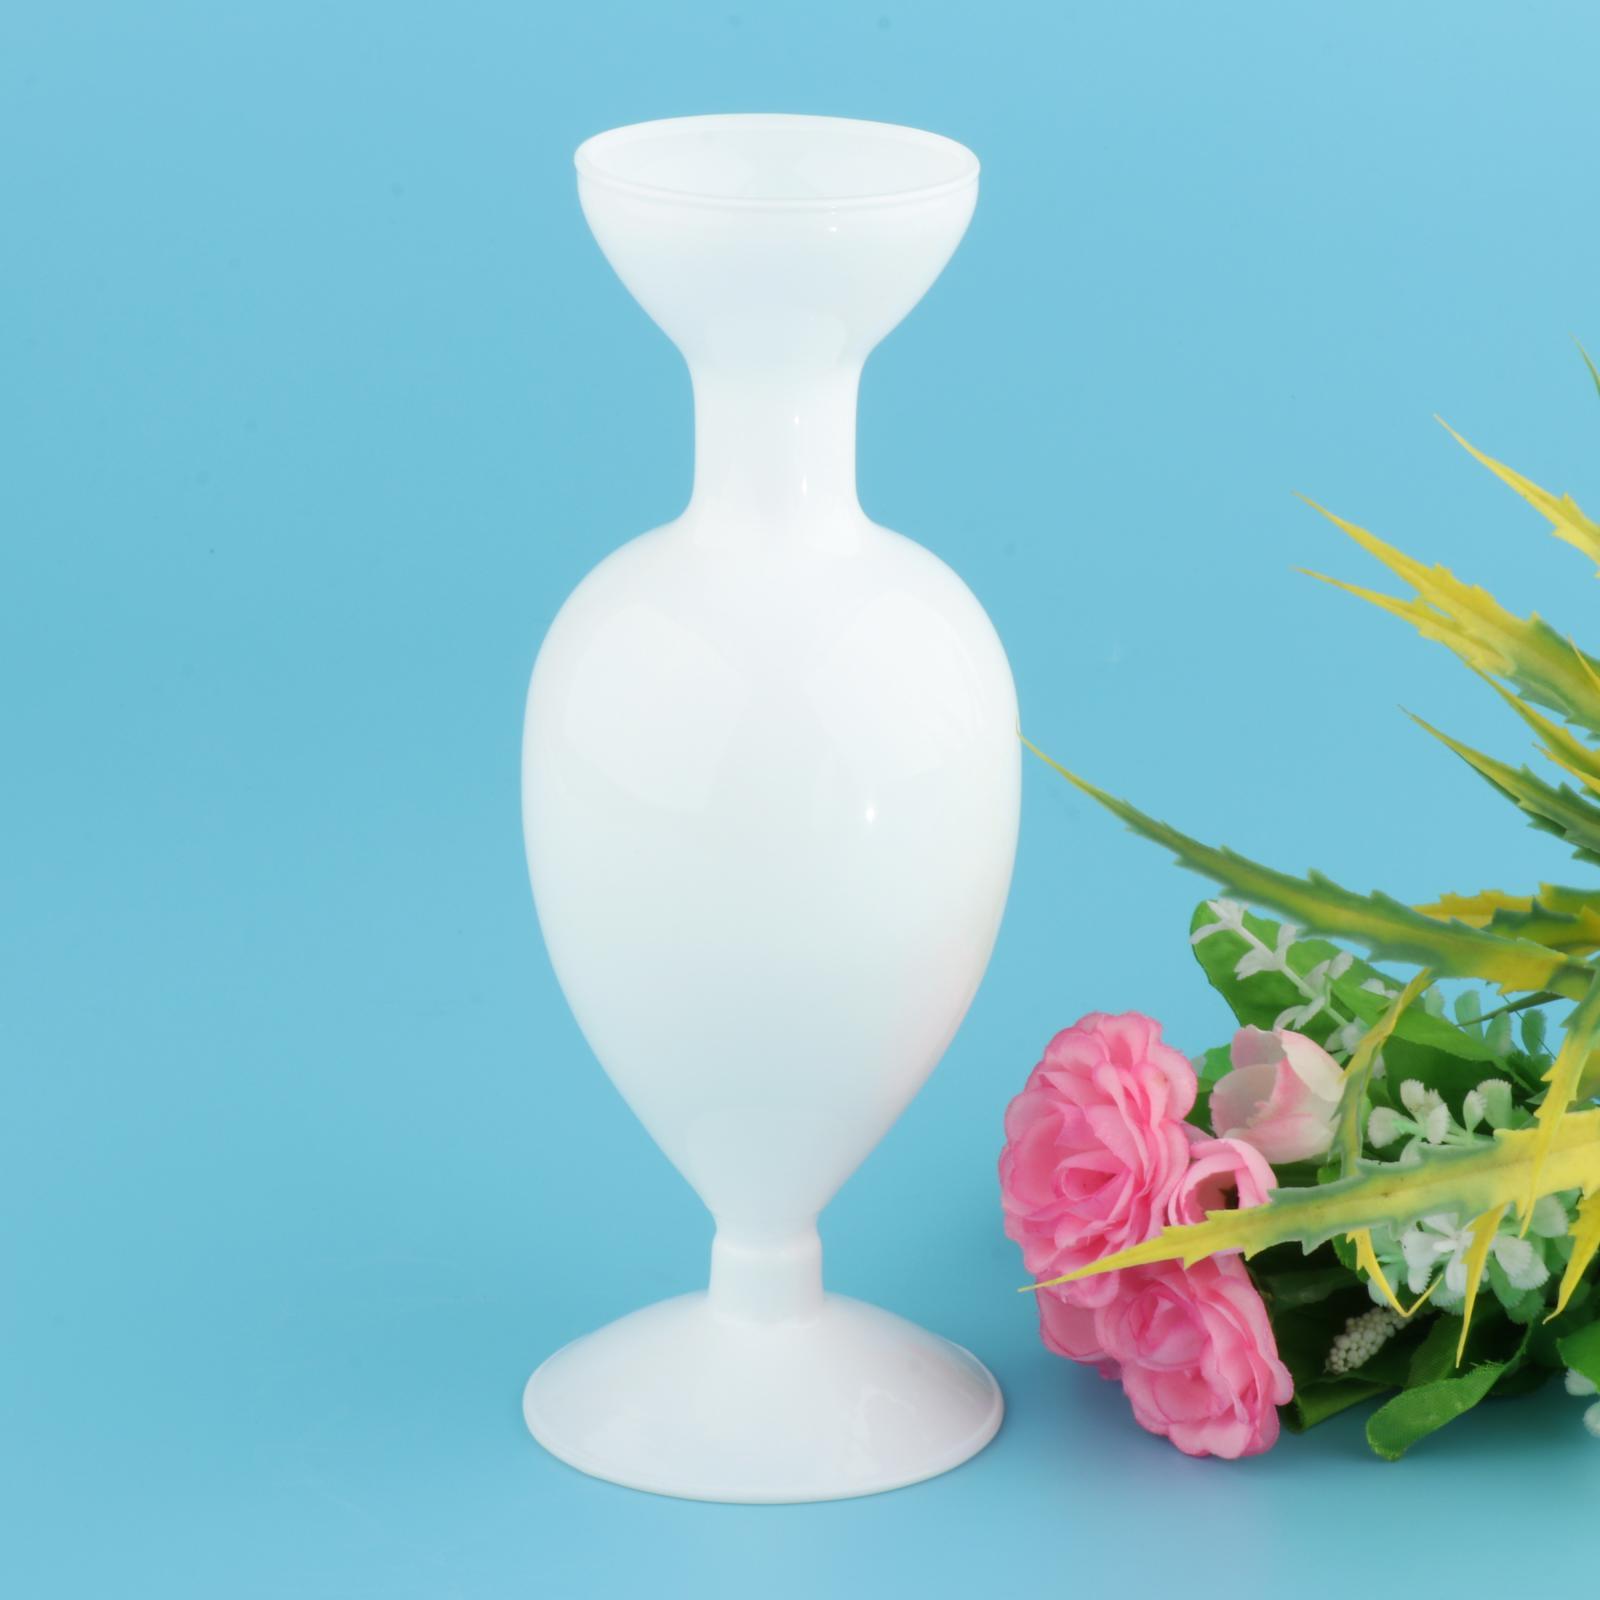 Glass Vase Vintage Flower Pot Ornament Hydroponics Plants Planter Desk White